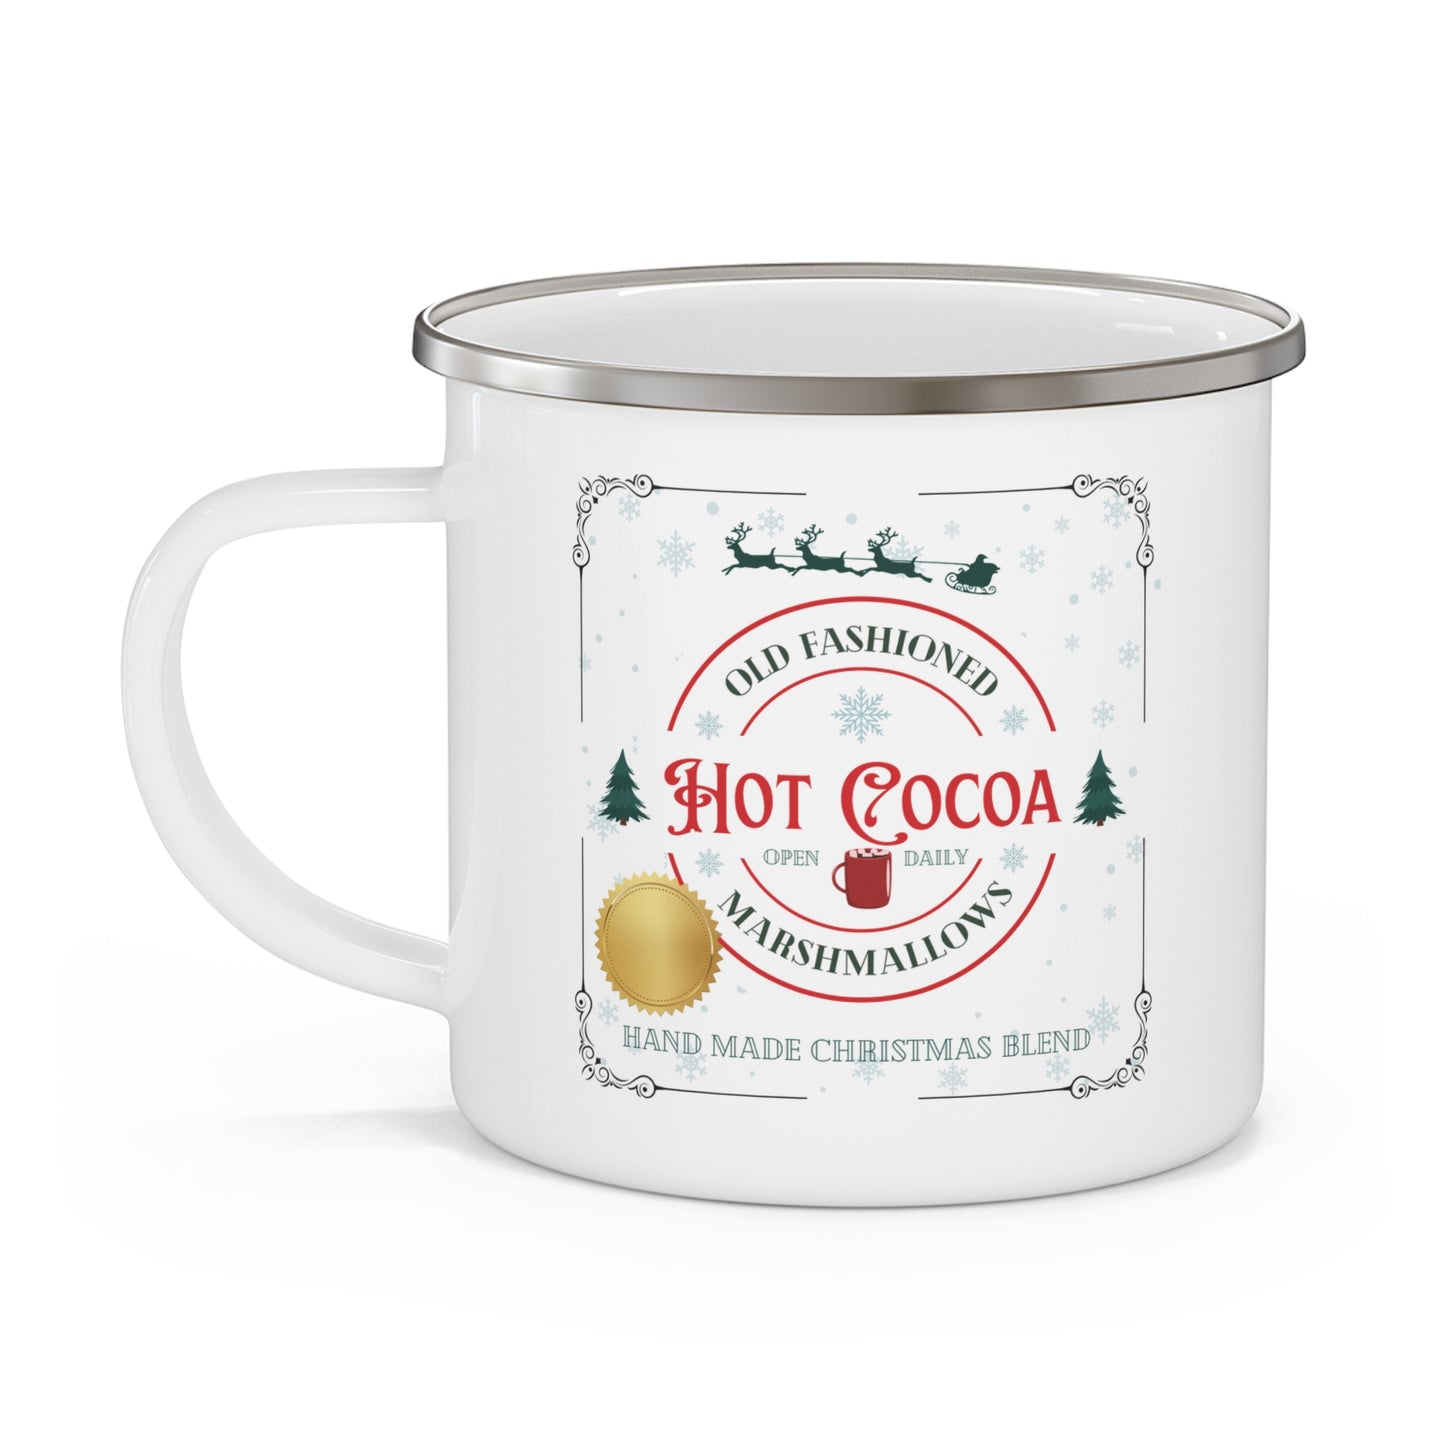 Old Fashioned Hot Cocoa Customized Enamel Mug